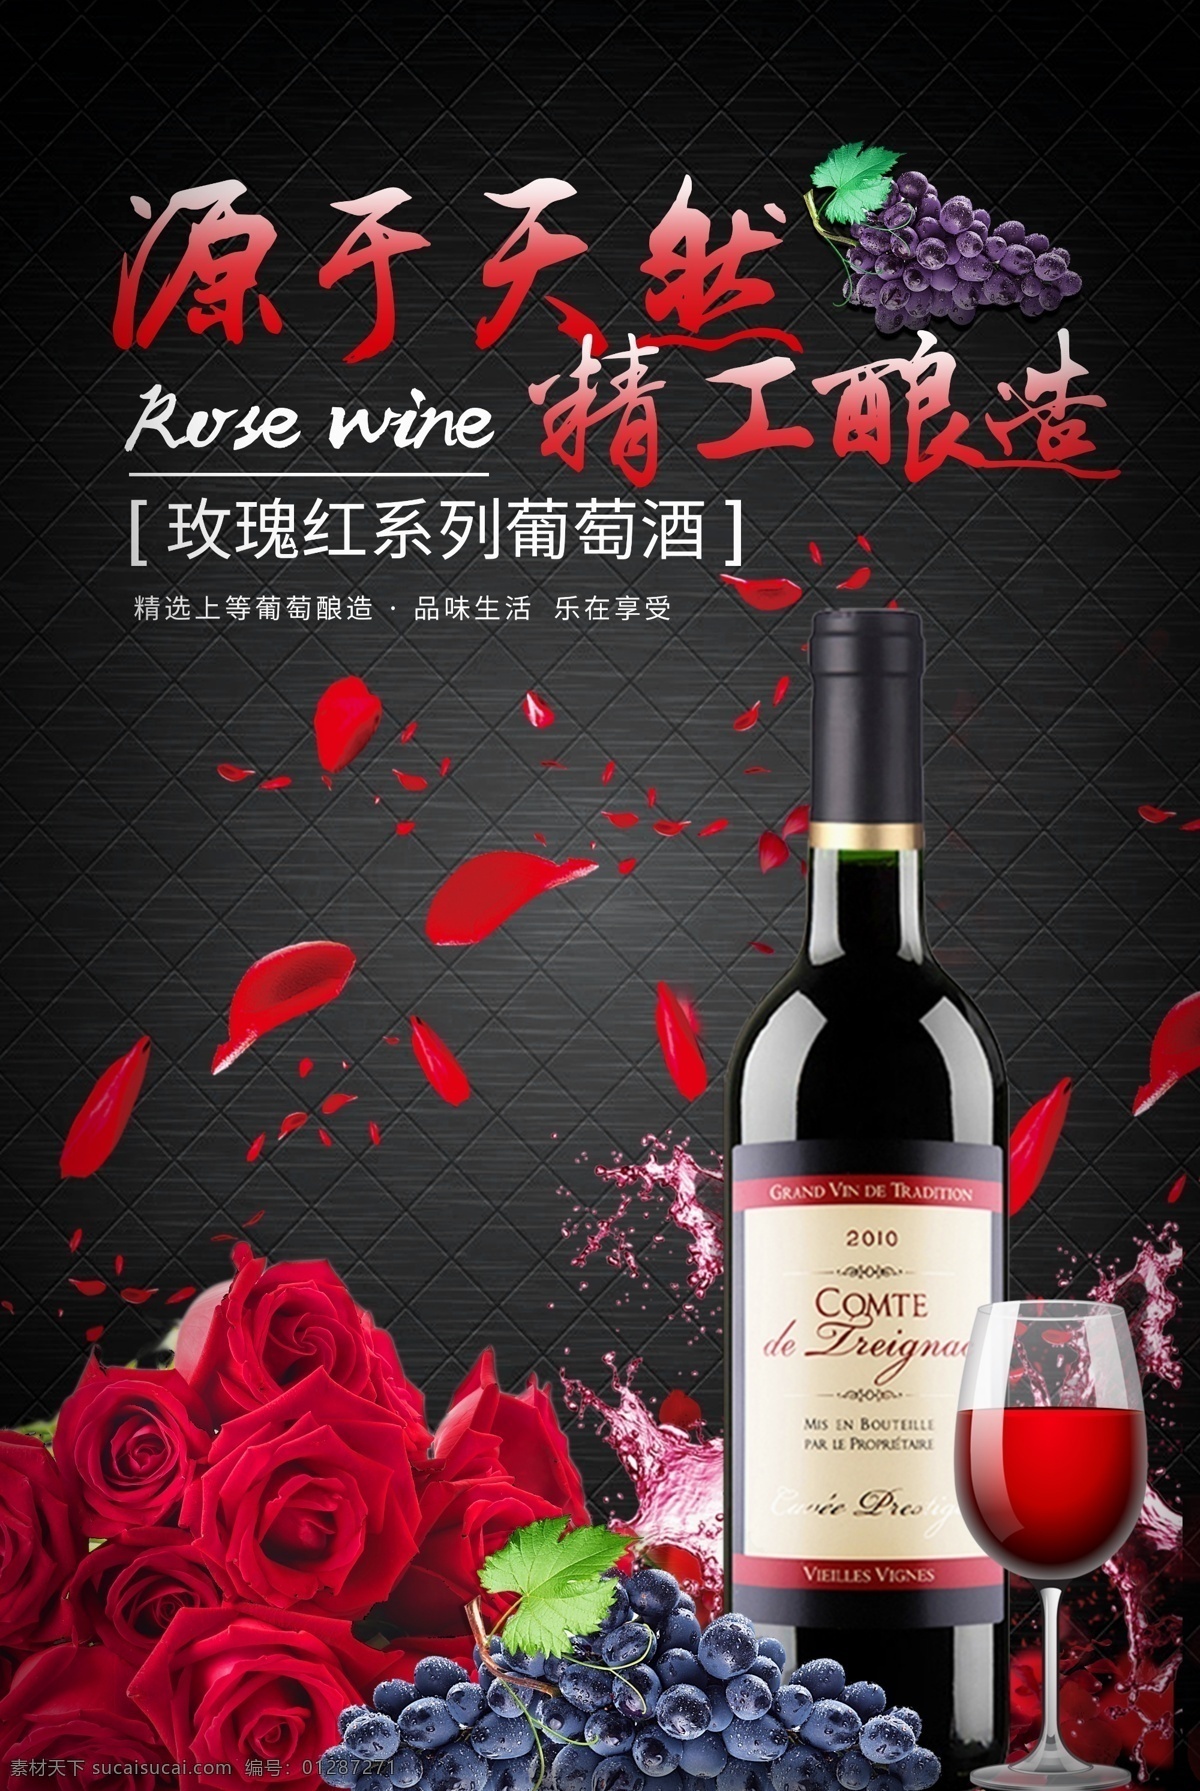 经典 玫瑰 红酒 海报 葡萄酒 红酒海报 玫瑰花 葡萄酒海报 黑色背景